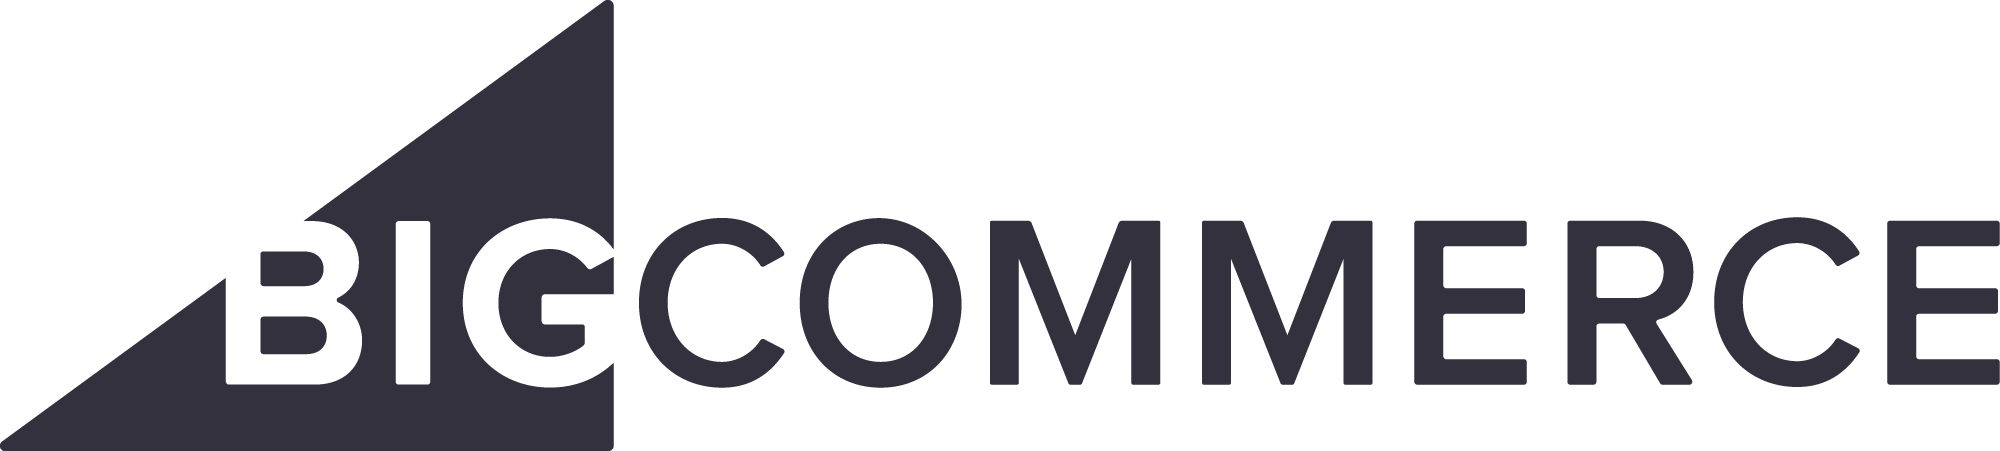 bigcommerce_logo